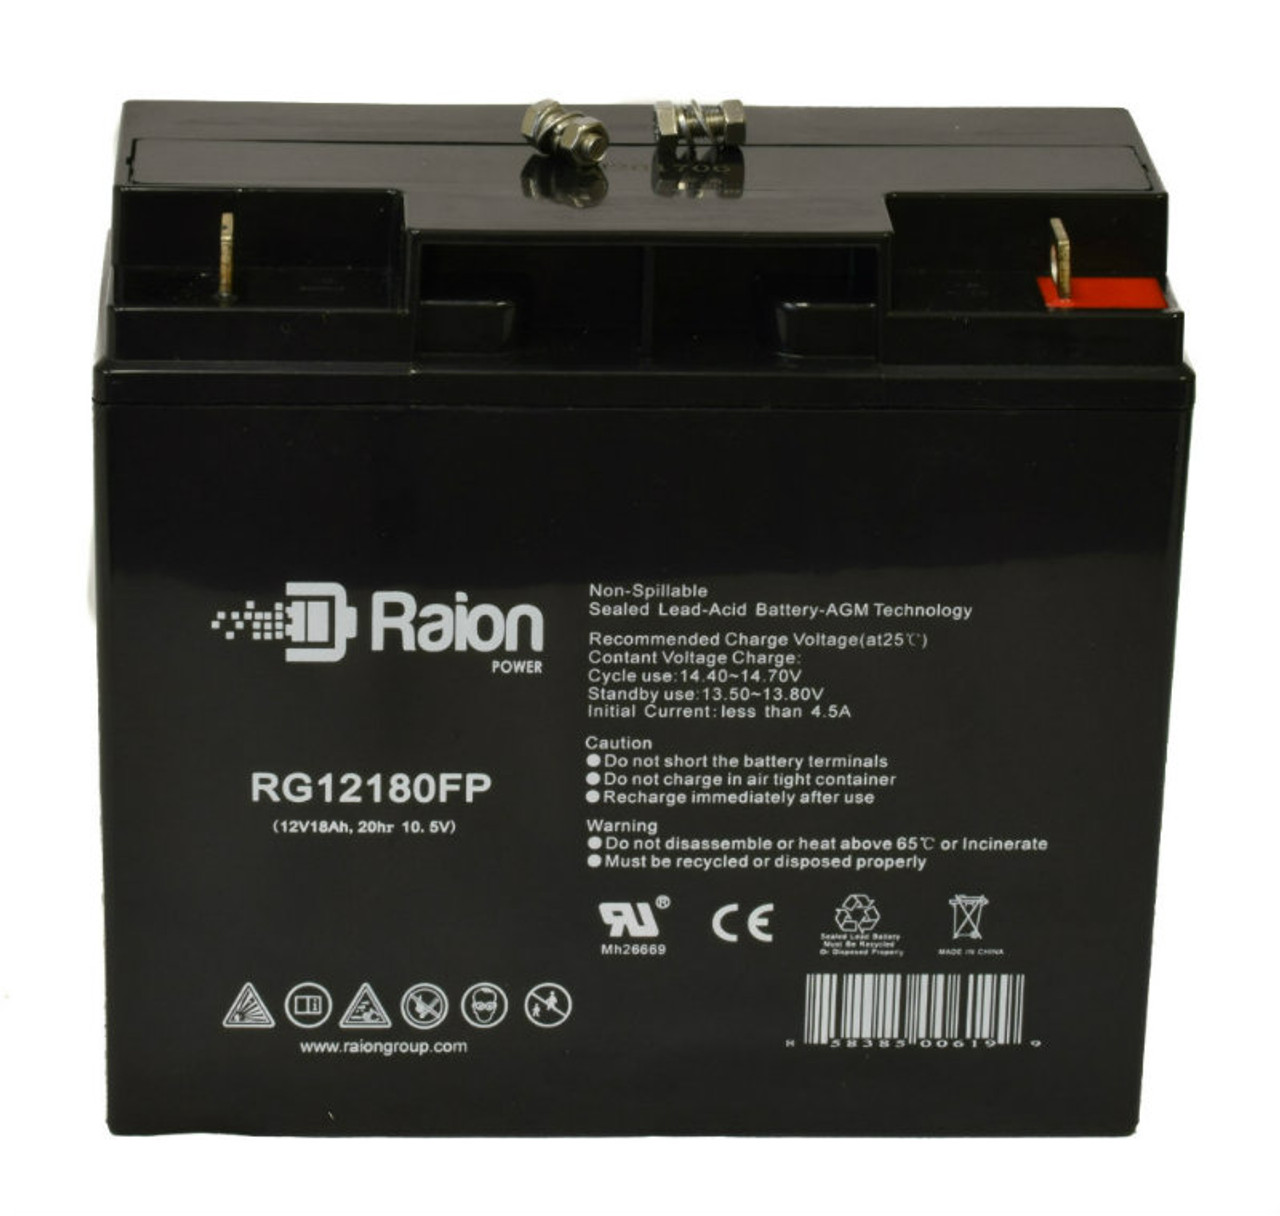 Raion Power RG12180FP 12V 18Ah Lead Acid Battery for Black & Decker PPRH5B Power Station Jump Starter